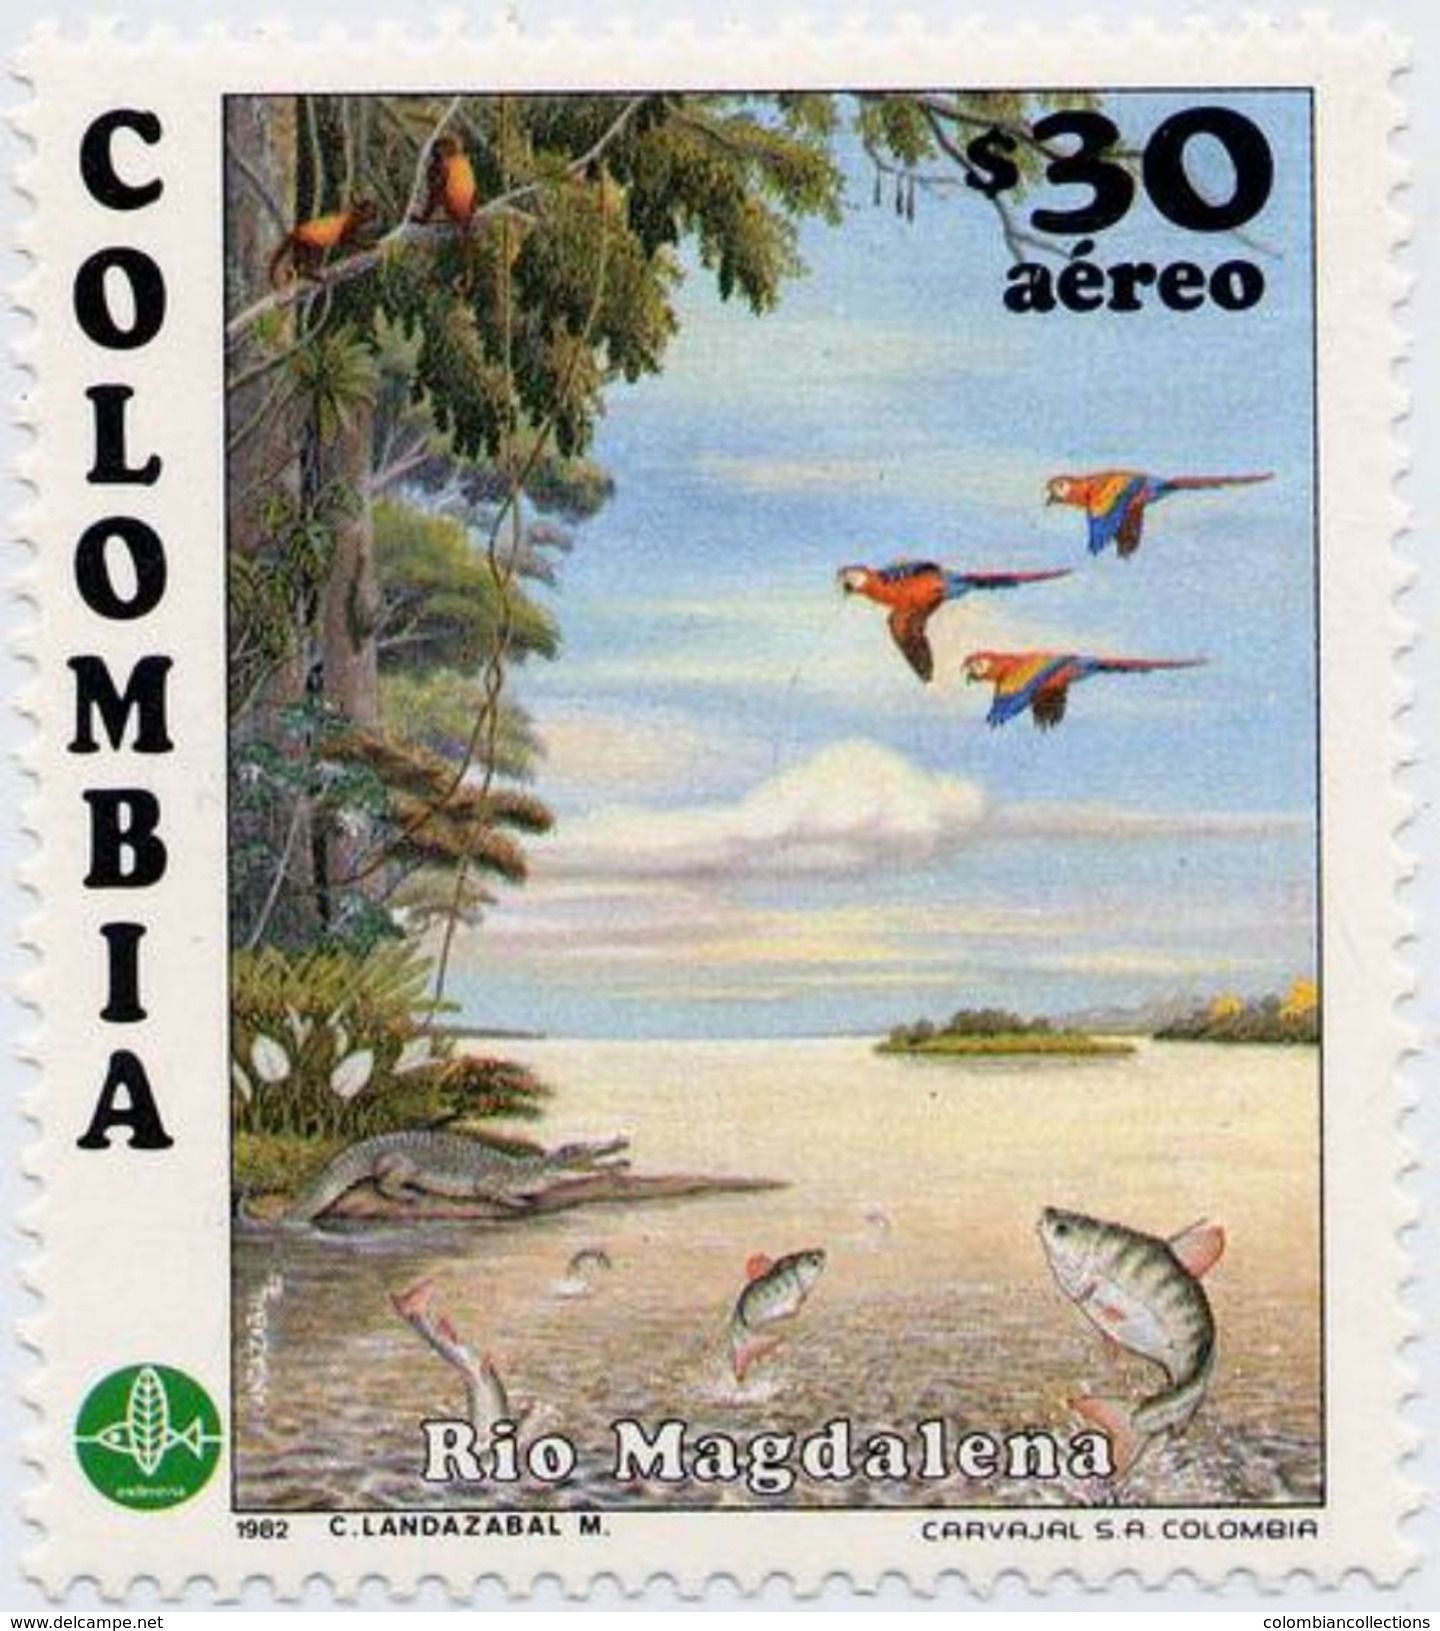 Lote 1583, Colombia,1982, Sello, Stamp, Rio Magdalena, Bird, Fish, Reptile, Crocodile, River, Parrot - Colombia